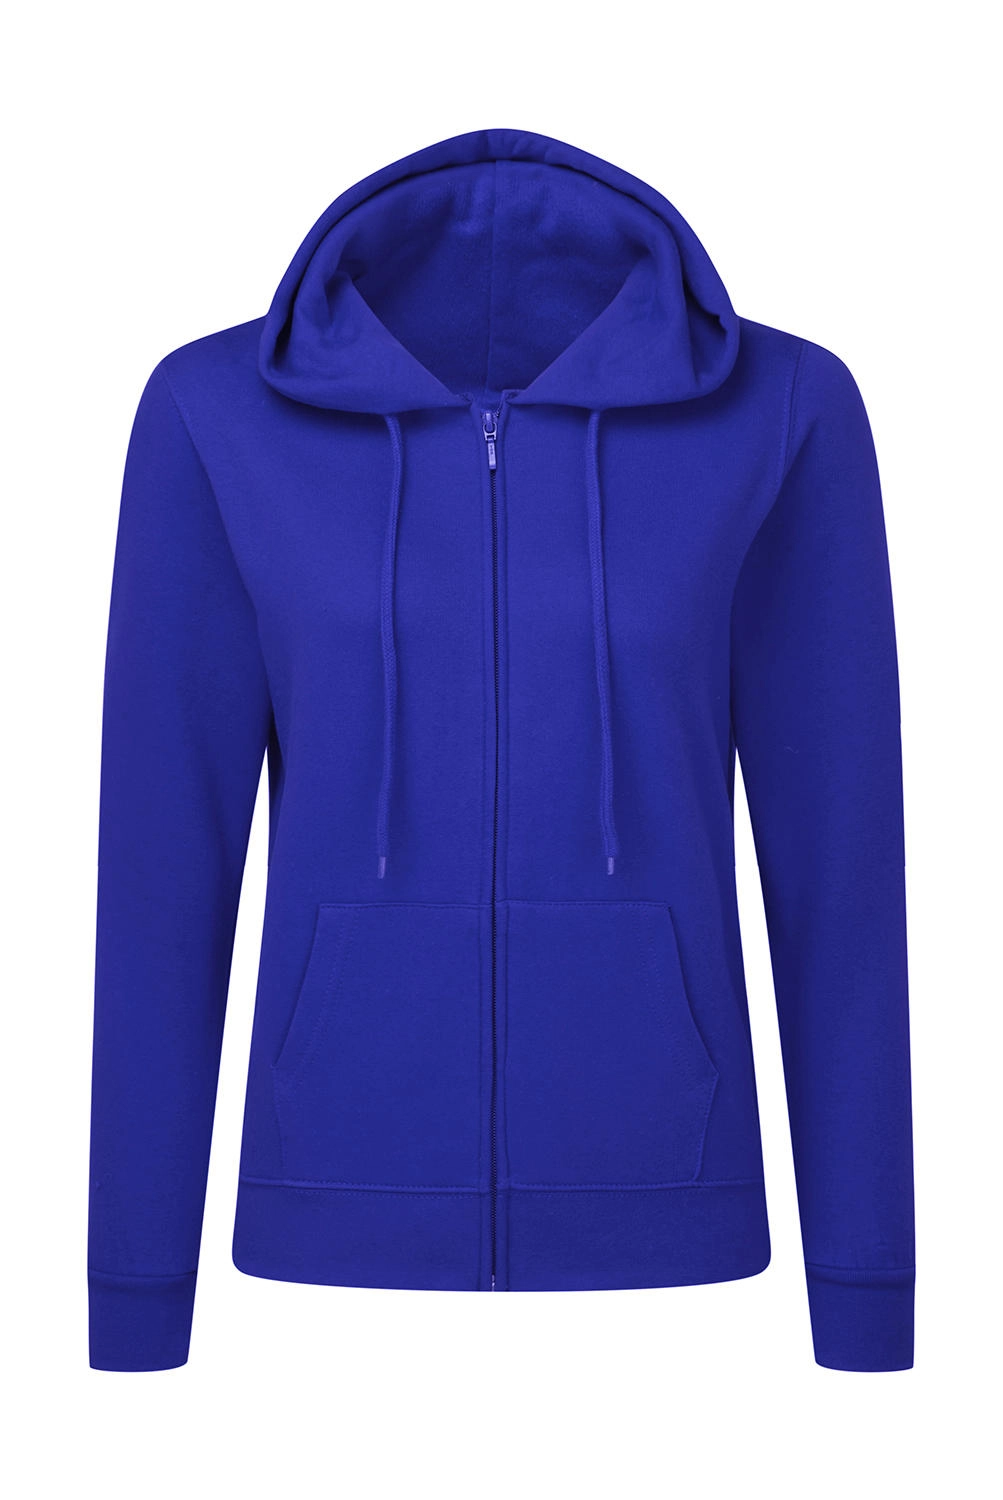 Hooded Full Zip Women zum Besticken und Bedrucken in der Farbe Royal Blue mit Ihren Logo, Schriftzug oder Motiv.